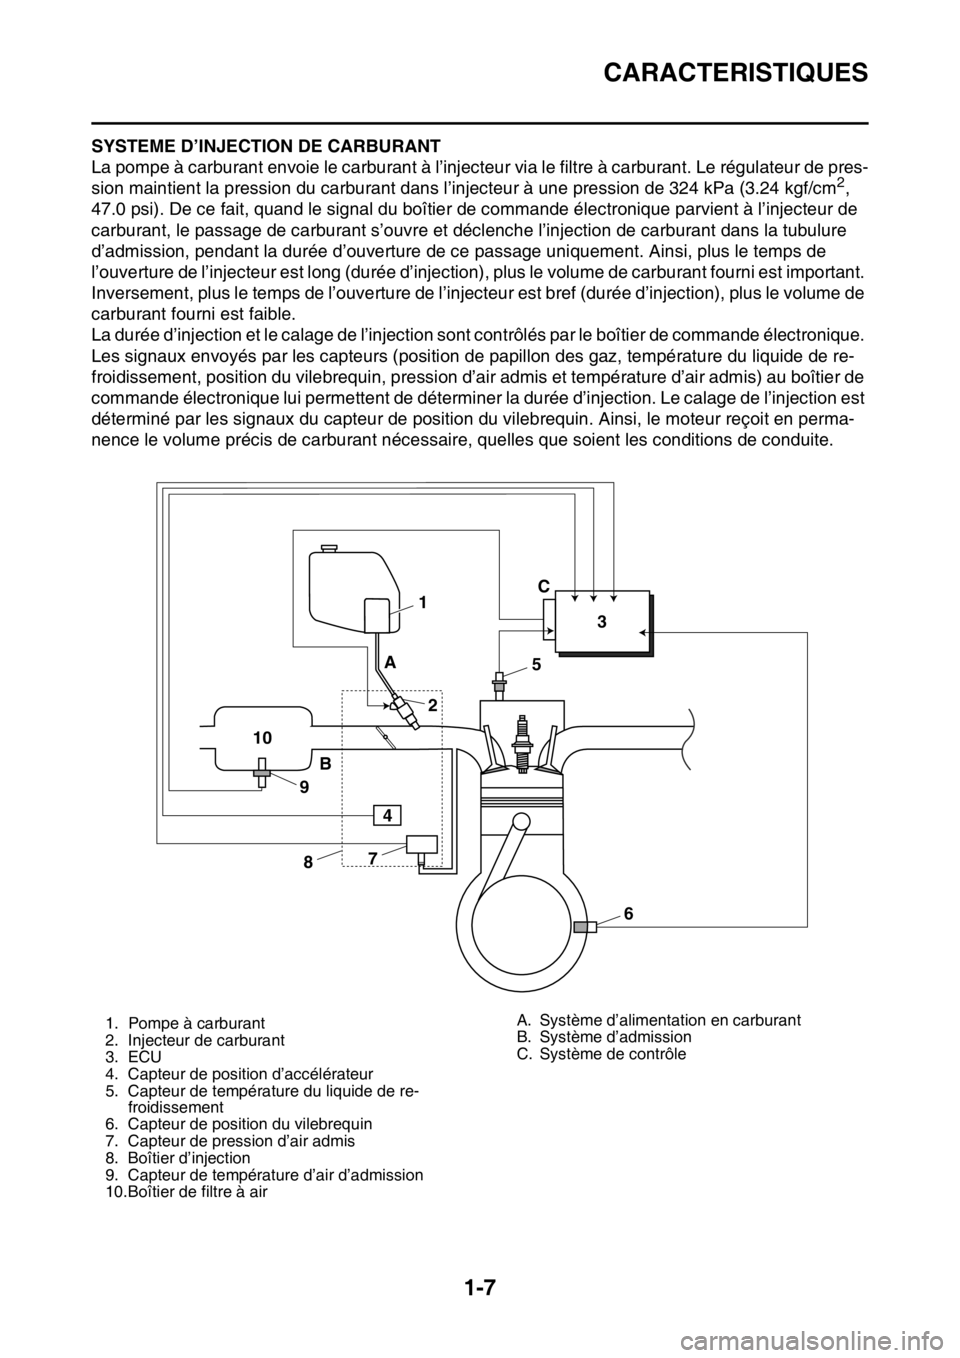 YAMAHA YZ250F 2014  Notices Demploi (in French) CARACTERISTIQUES
1-7
FAS1SM1015SYSTEME D’INJECTION DE CARBURANT
La pompe à carburant envoie le carburant à l’injecteur via le filtre à carburant. Le régulateur de pres-
sion maintient la press